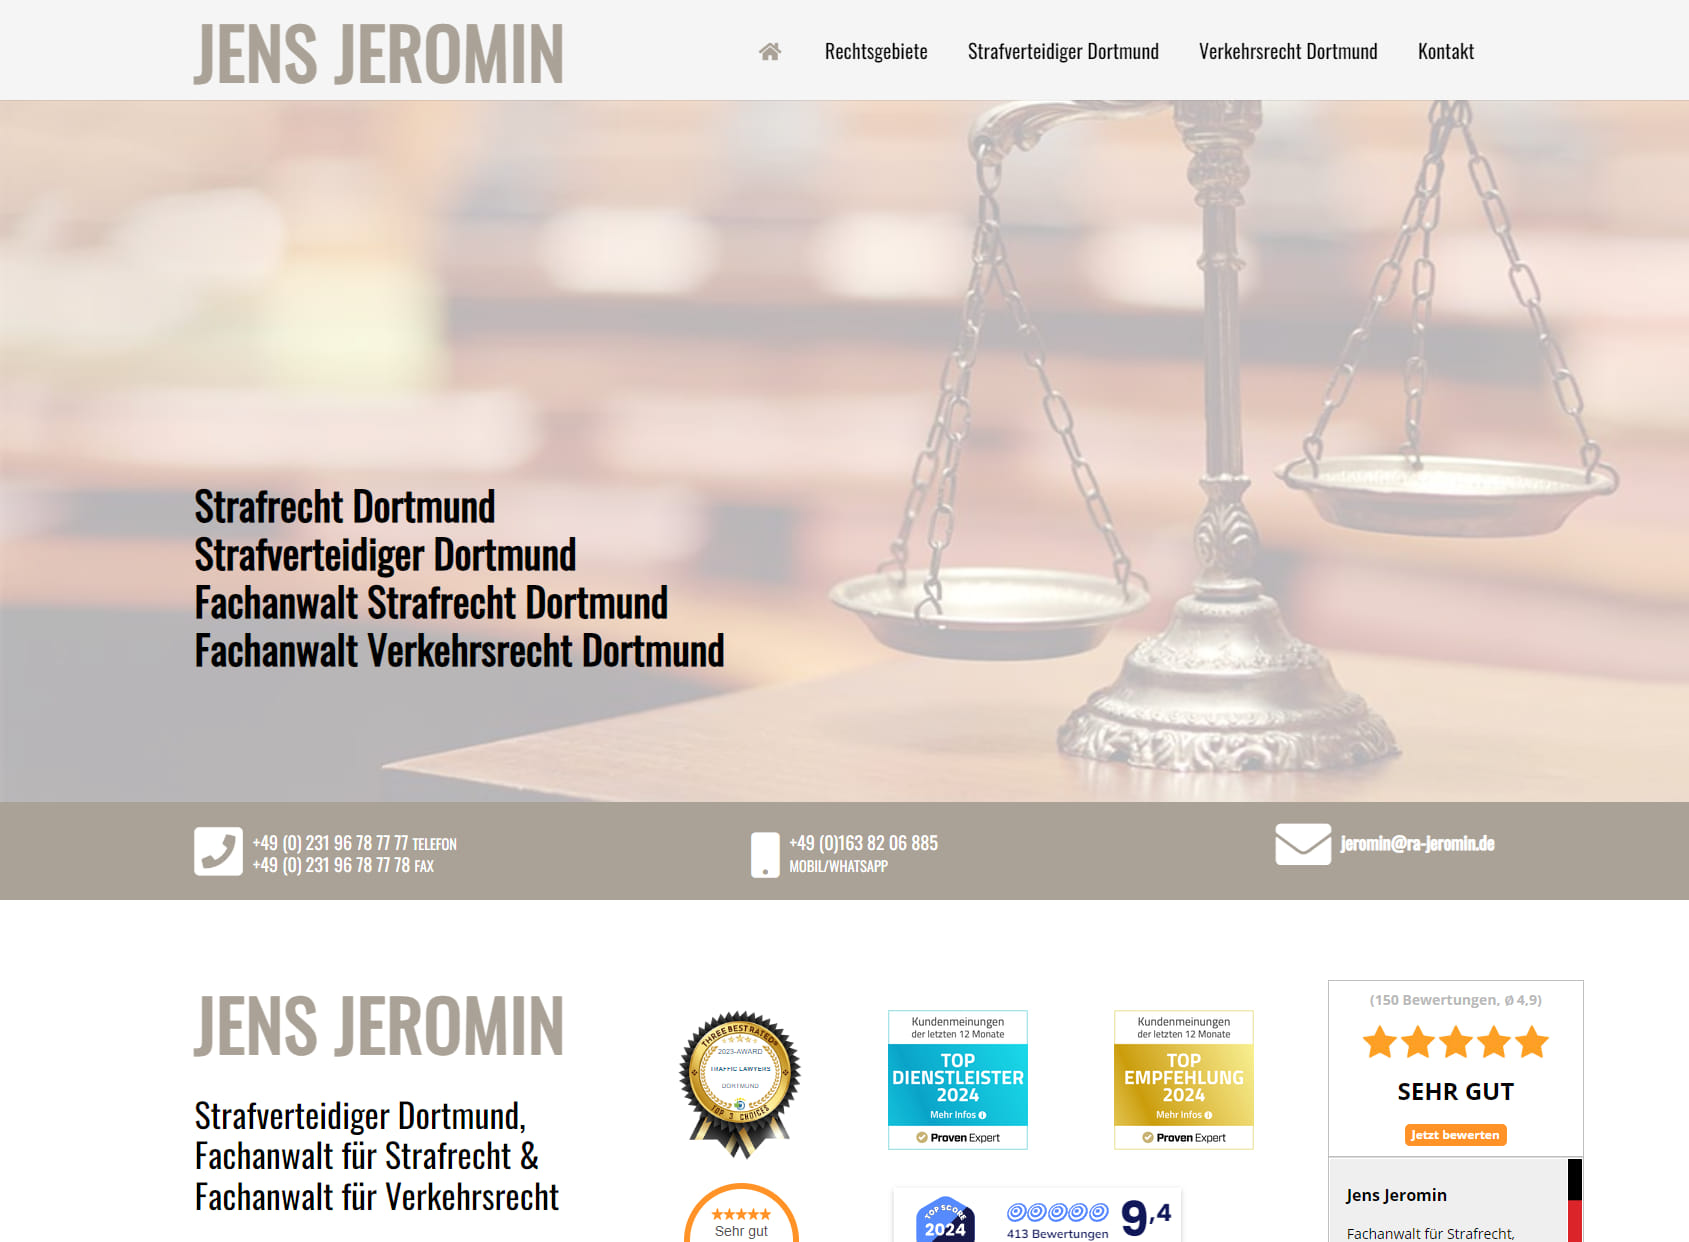 Jens Jeromin, Fachanwalt für Strafrecht und Verkehrsrecht